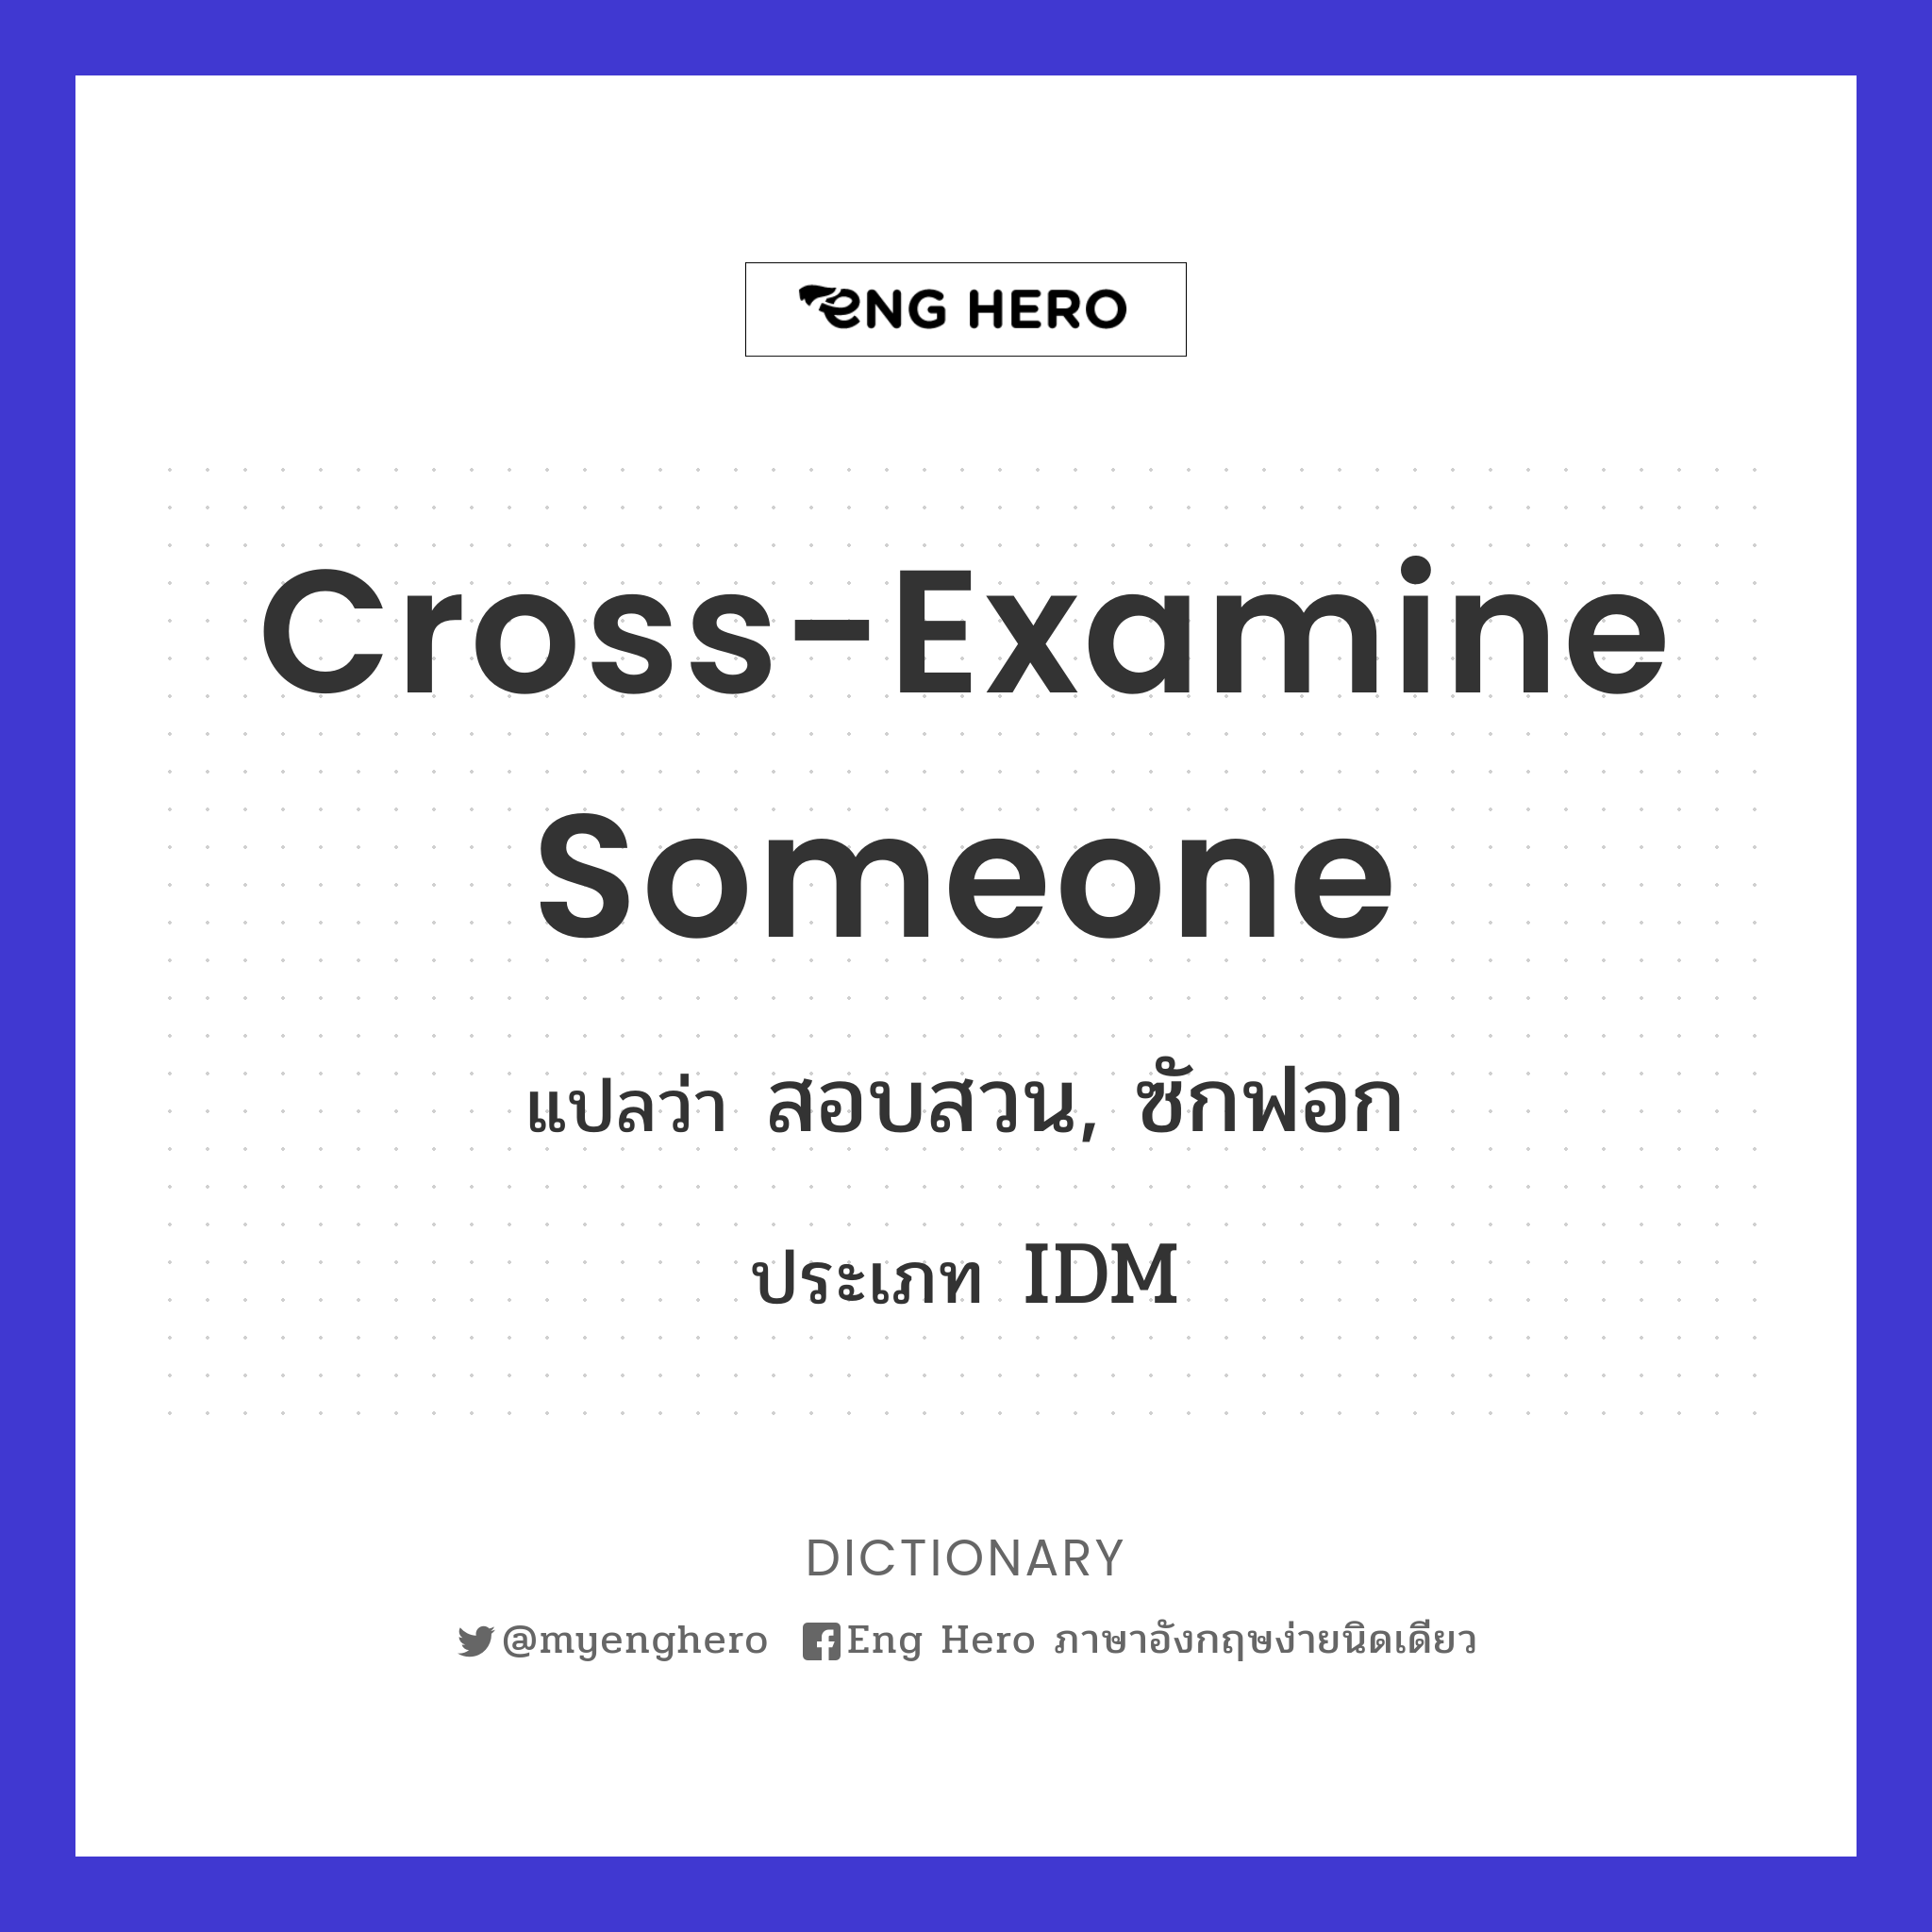 cross-examine someone